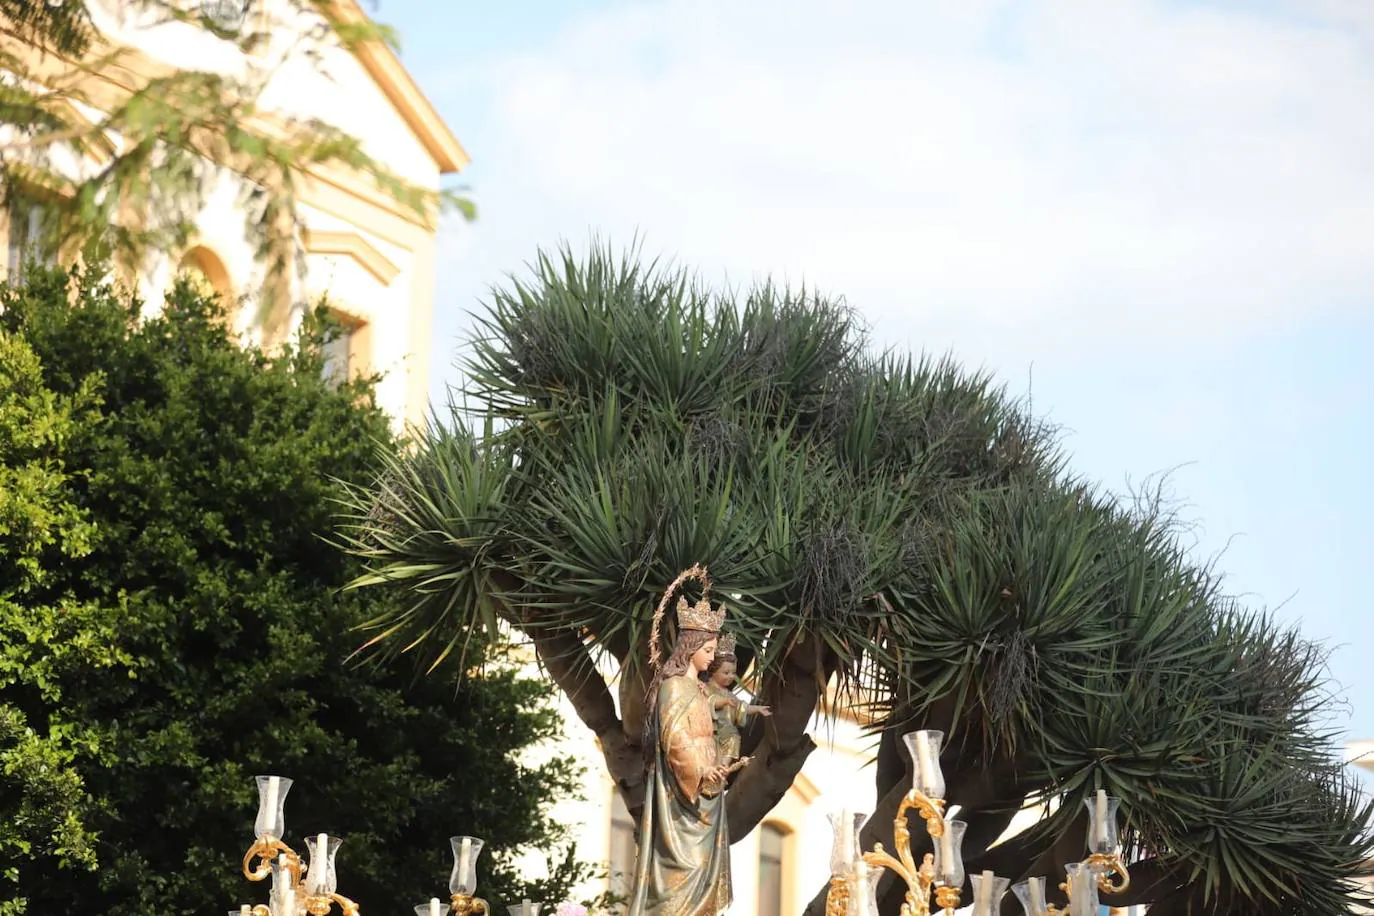 Fotos: Así ha sido la procesión de María Auxiliadora en Cádiz